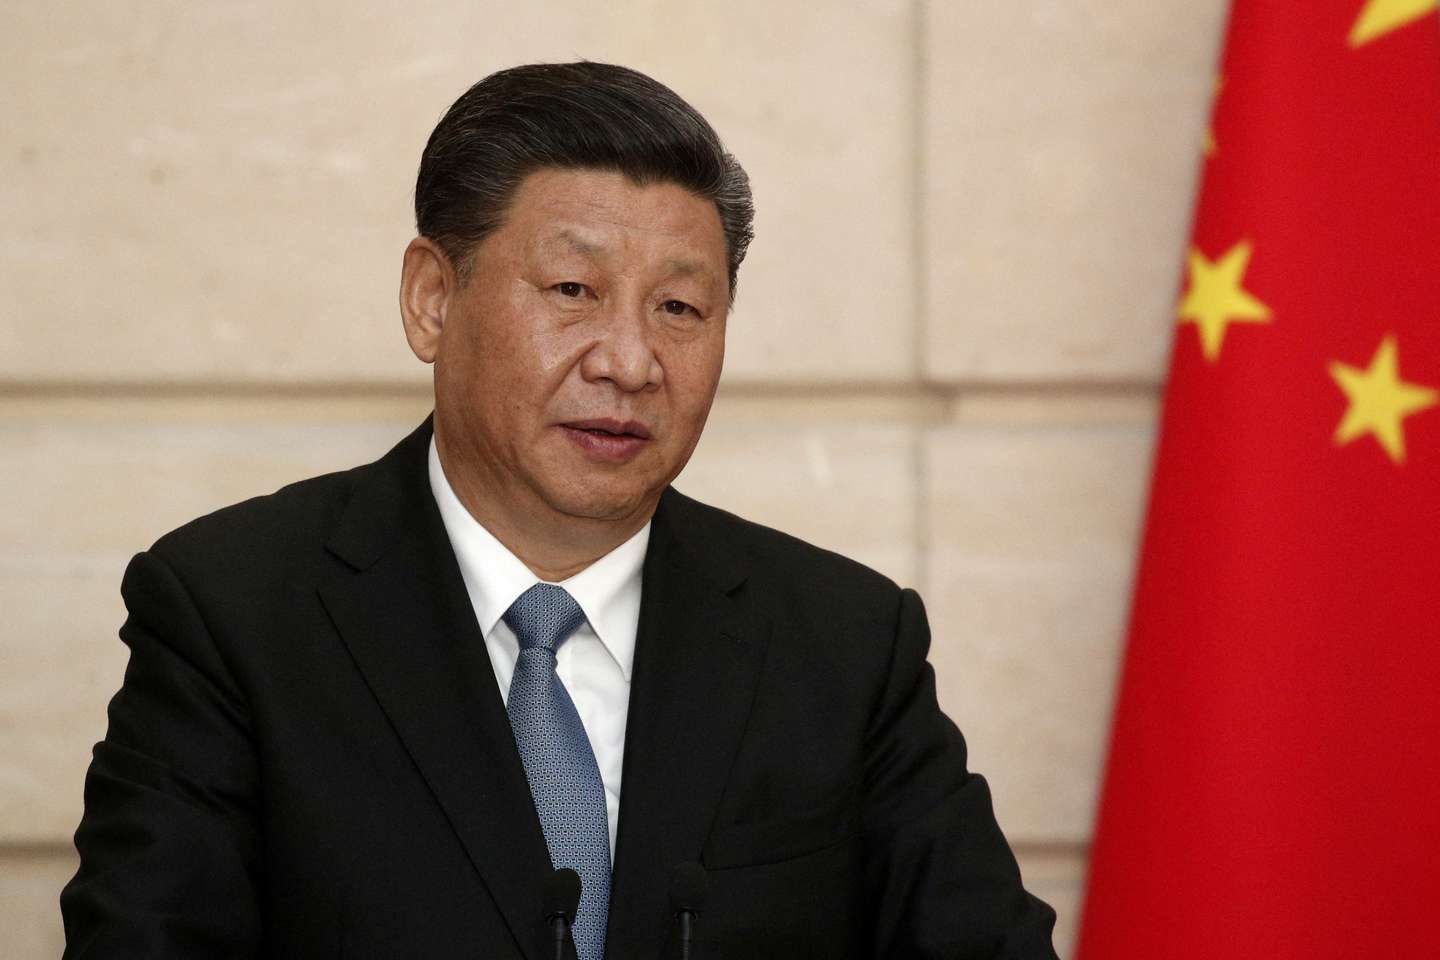 El presidente chino Xi Jinping durante una conferencia en el Palacio del Eliseo, en París. (Foto: Yoan Valat/via REUTERS)